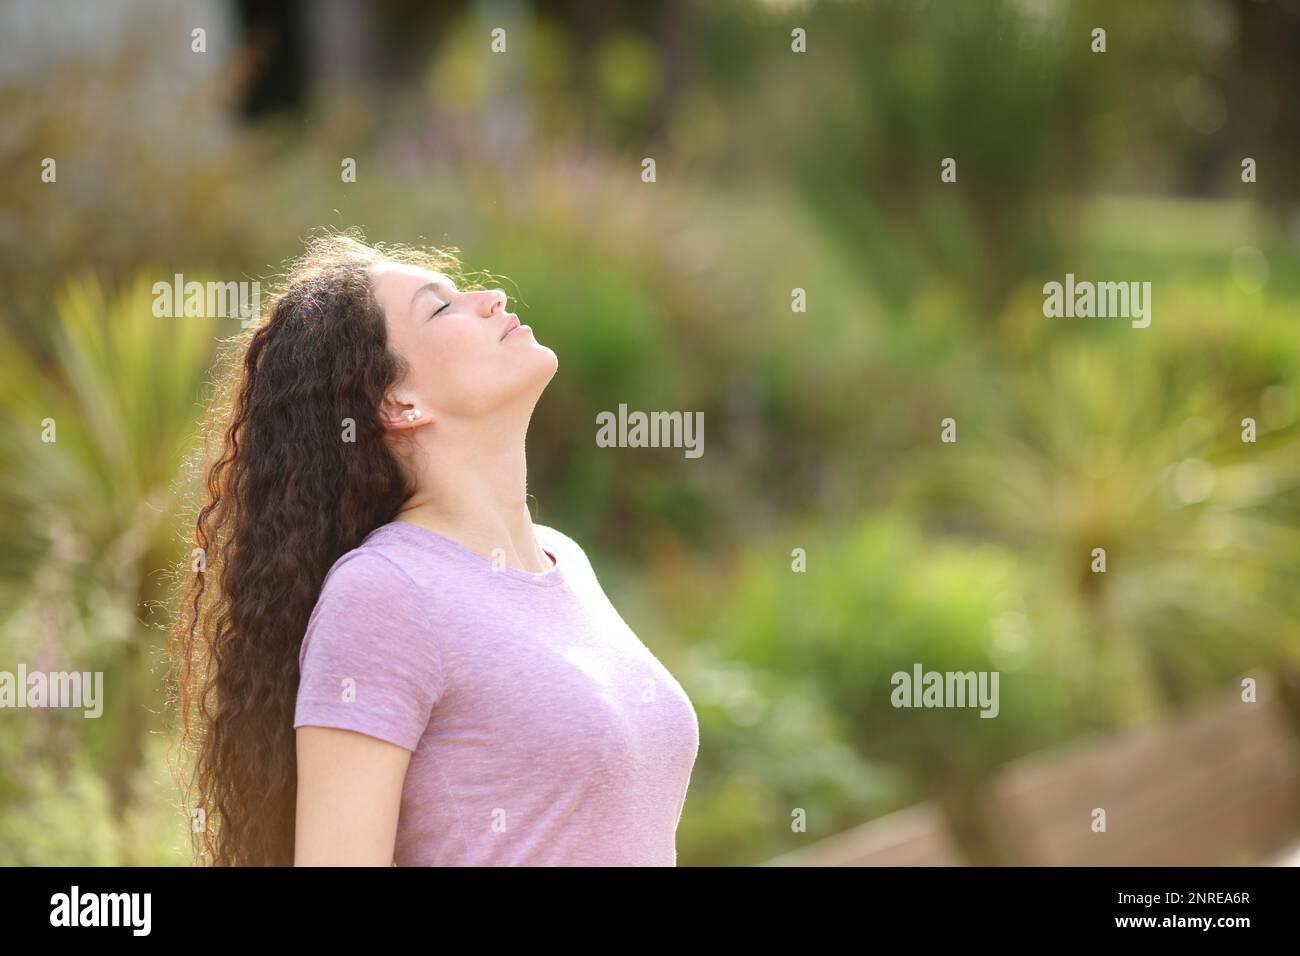 Eine Frau, die frische Luft atmet und in einem grünen Park steht Stockfoto